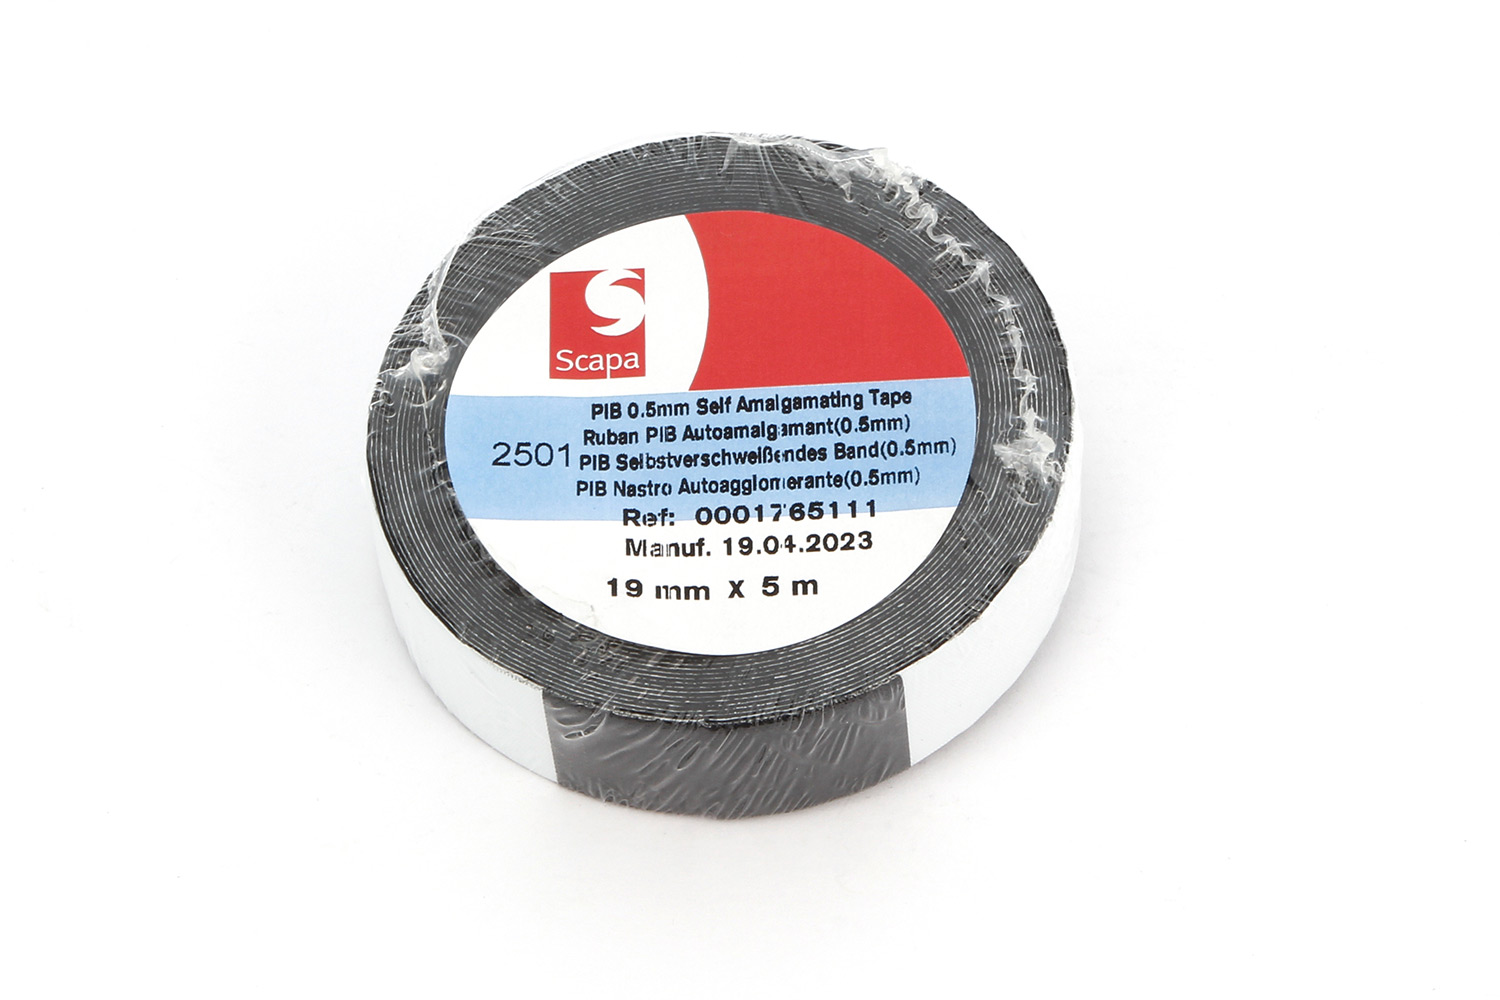 Self-sealing adhesive repair tape